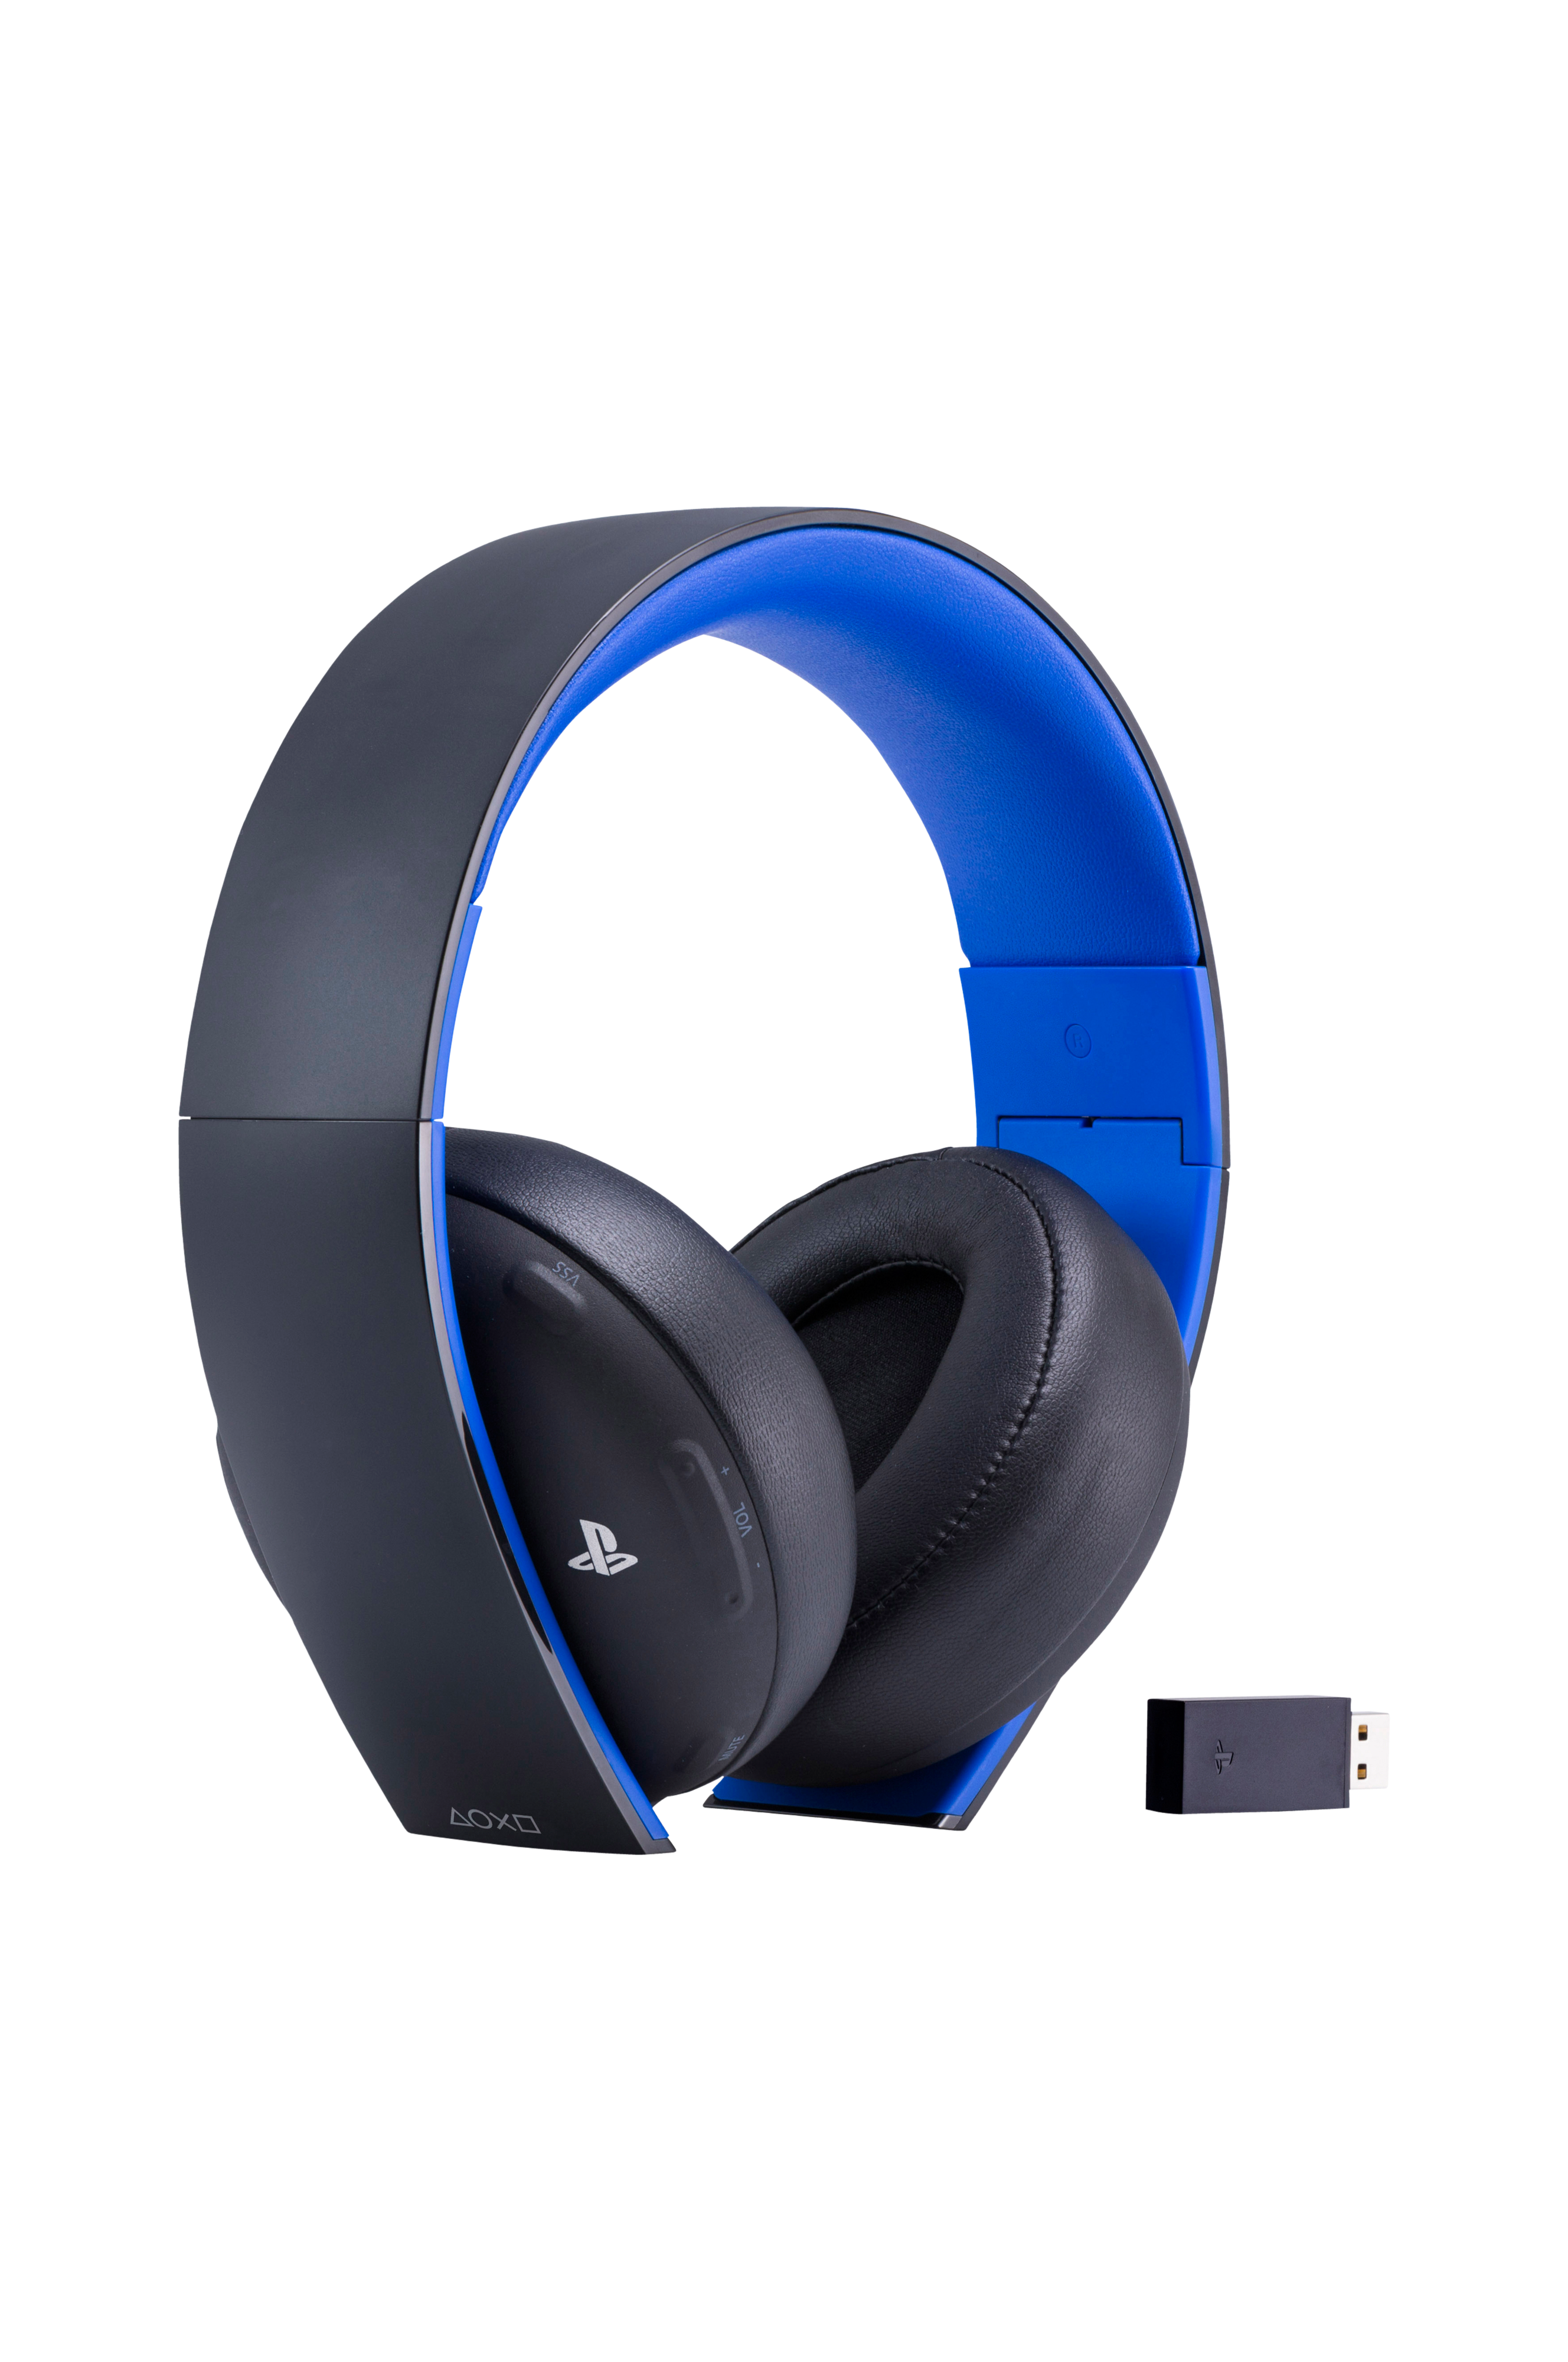 Ps5 какие наушники. Sony Wireless stereo Headset Headset 3. Sony Pulse Wireless stereo Headset Elite Edition. Наушники Wireless stereo Headset ps4. Wireless stereo Headset 2.0 ps4.